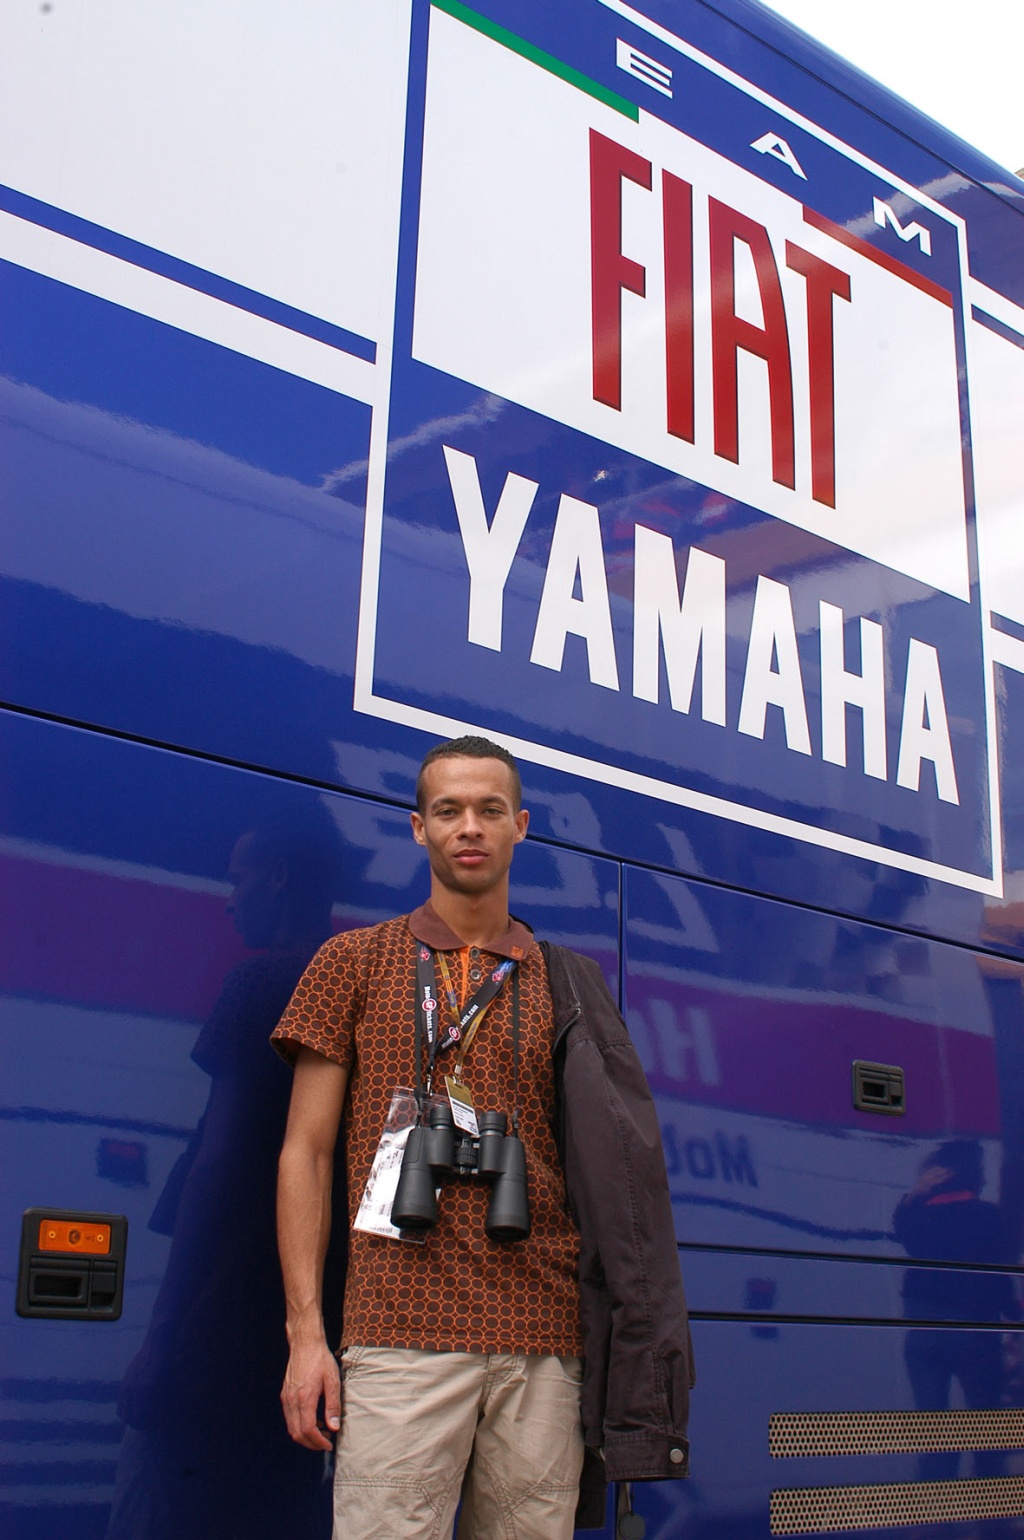 Zwyciezca konkursu przy teamie fabrycznym Fiat Yamaha